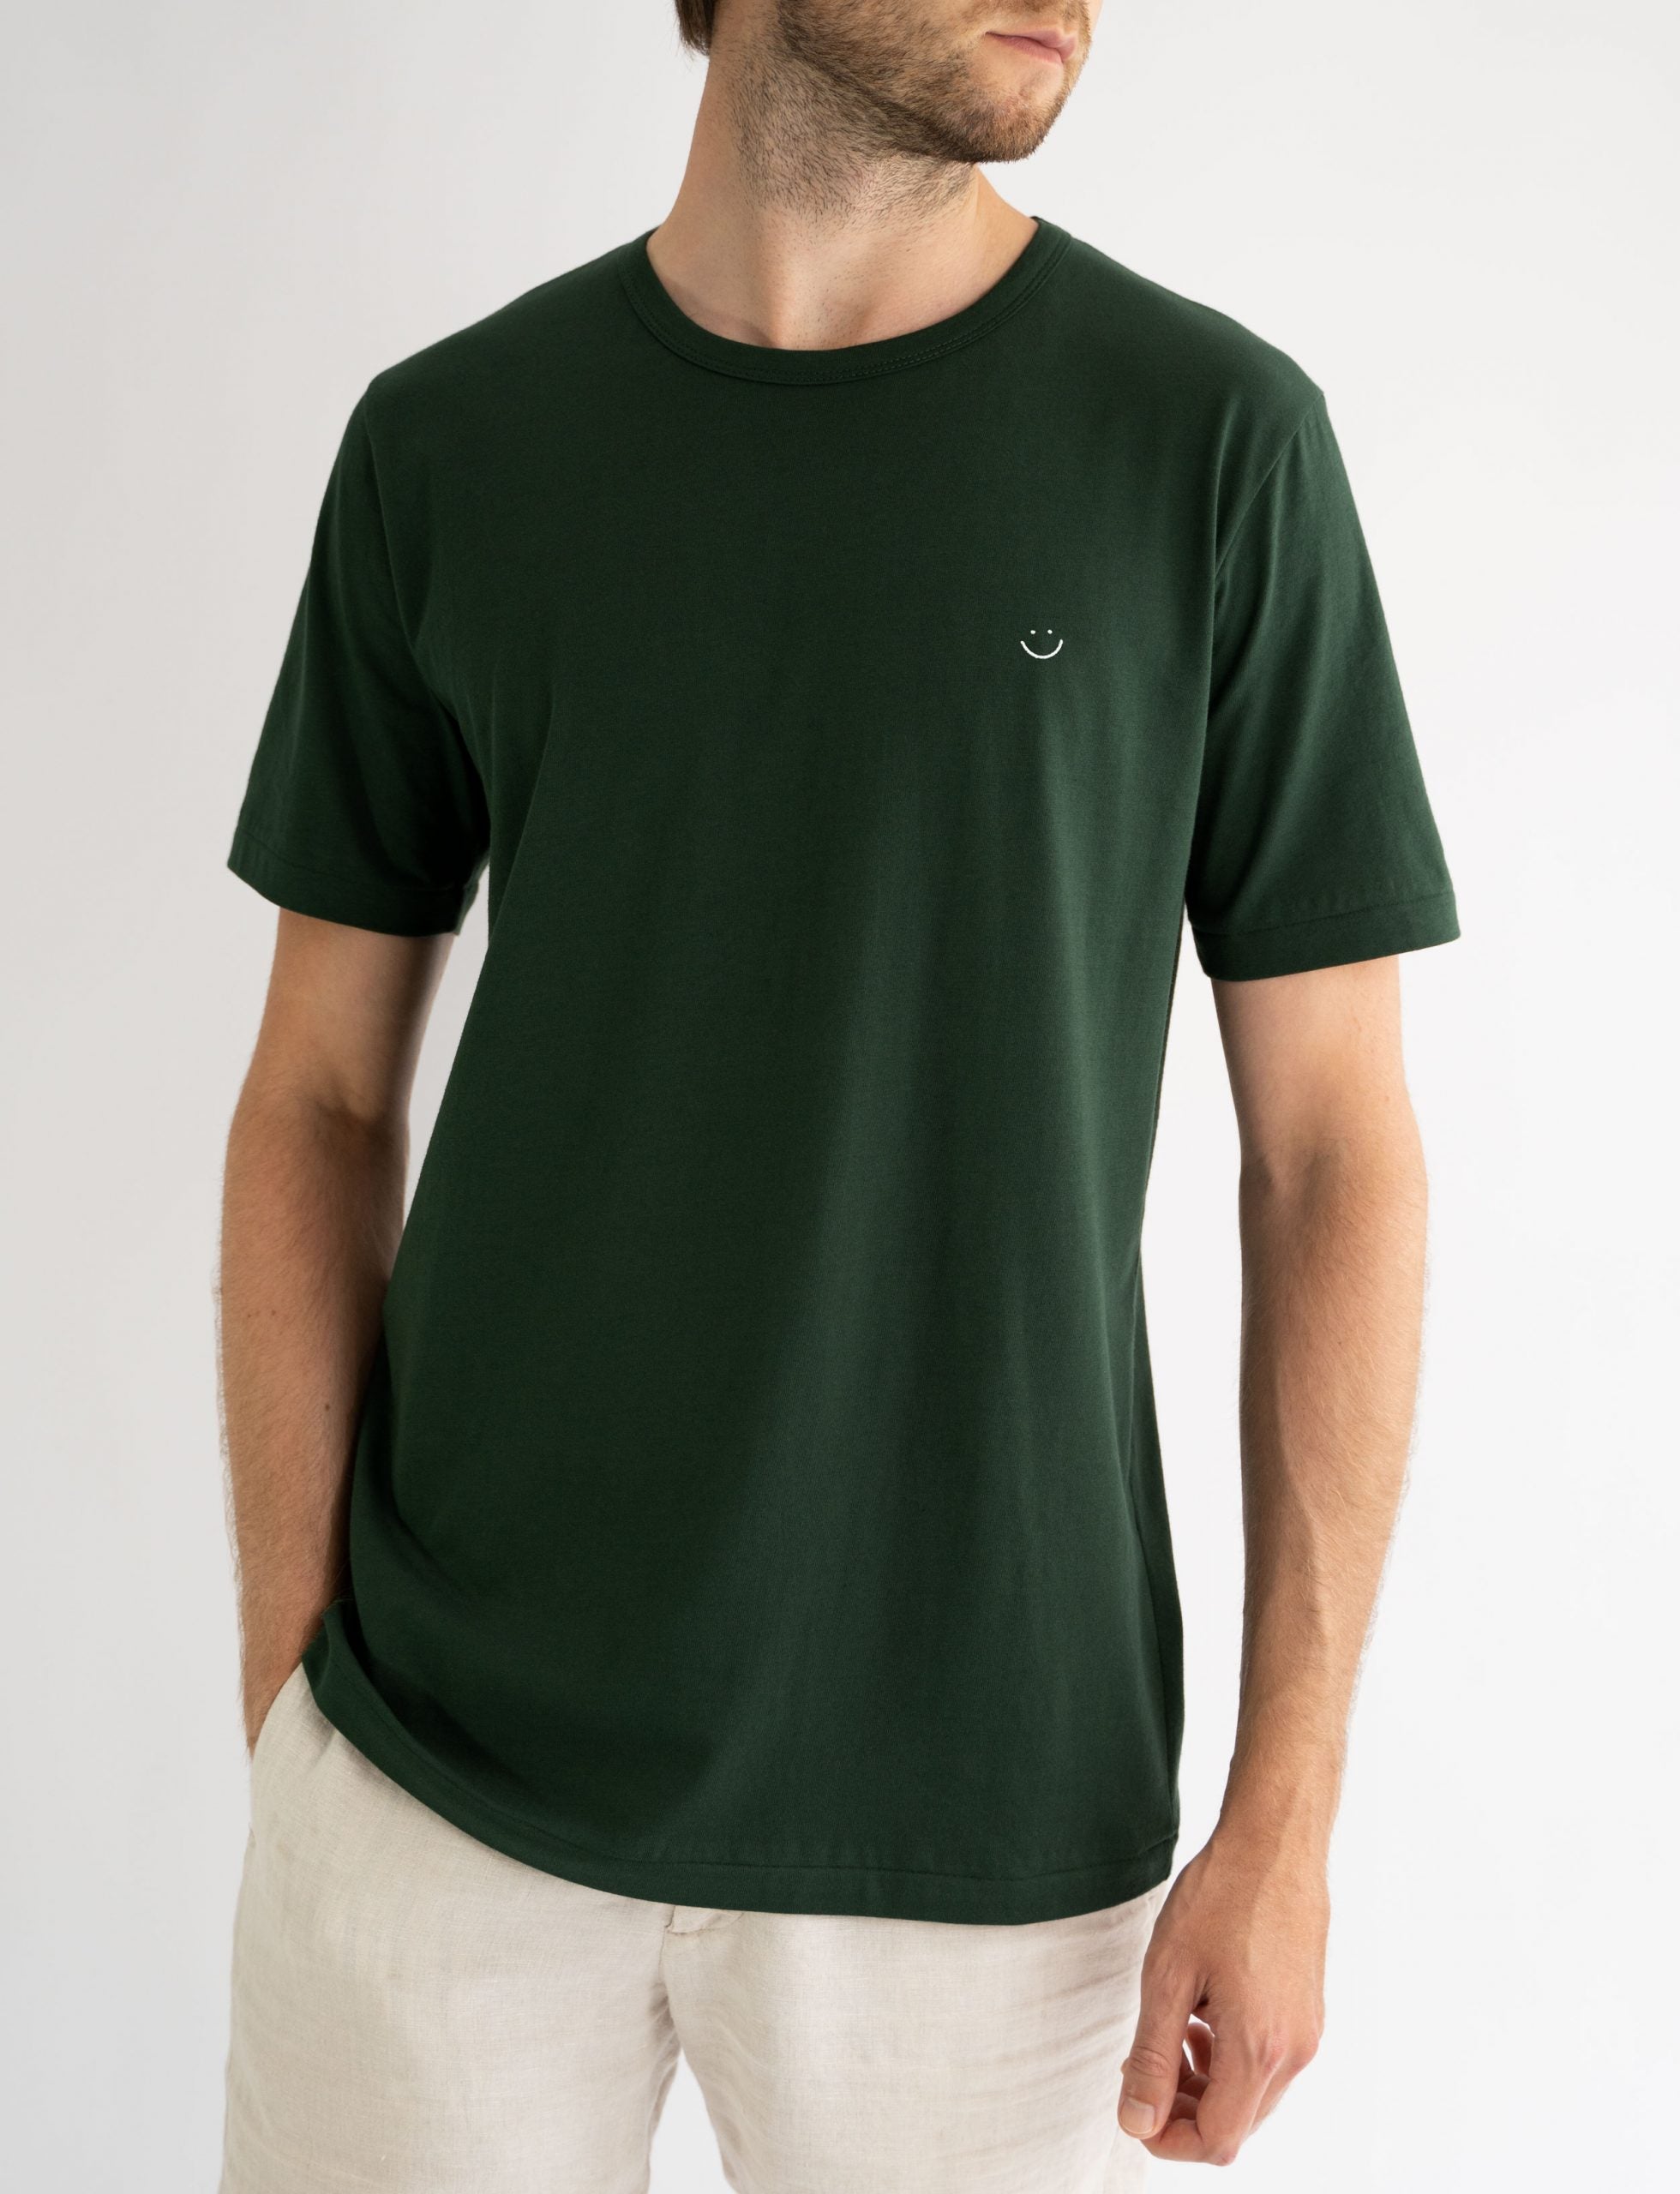 t-shirt organic cotton australian made forest green